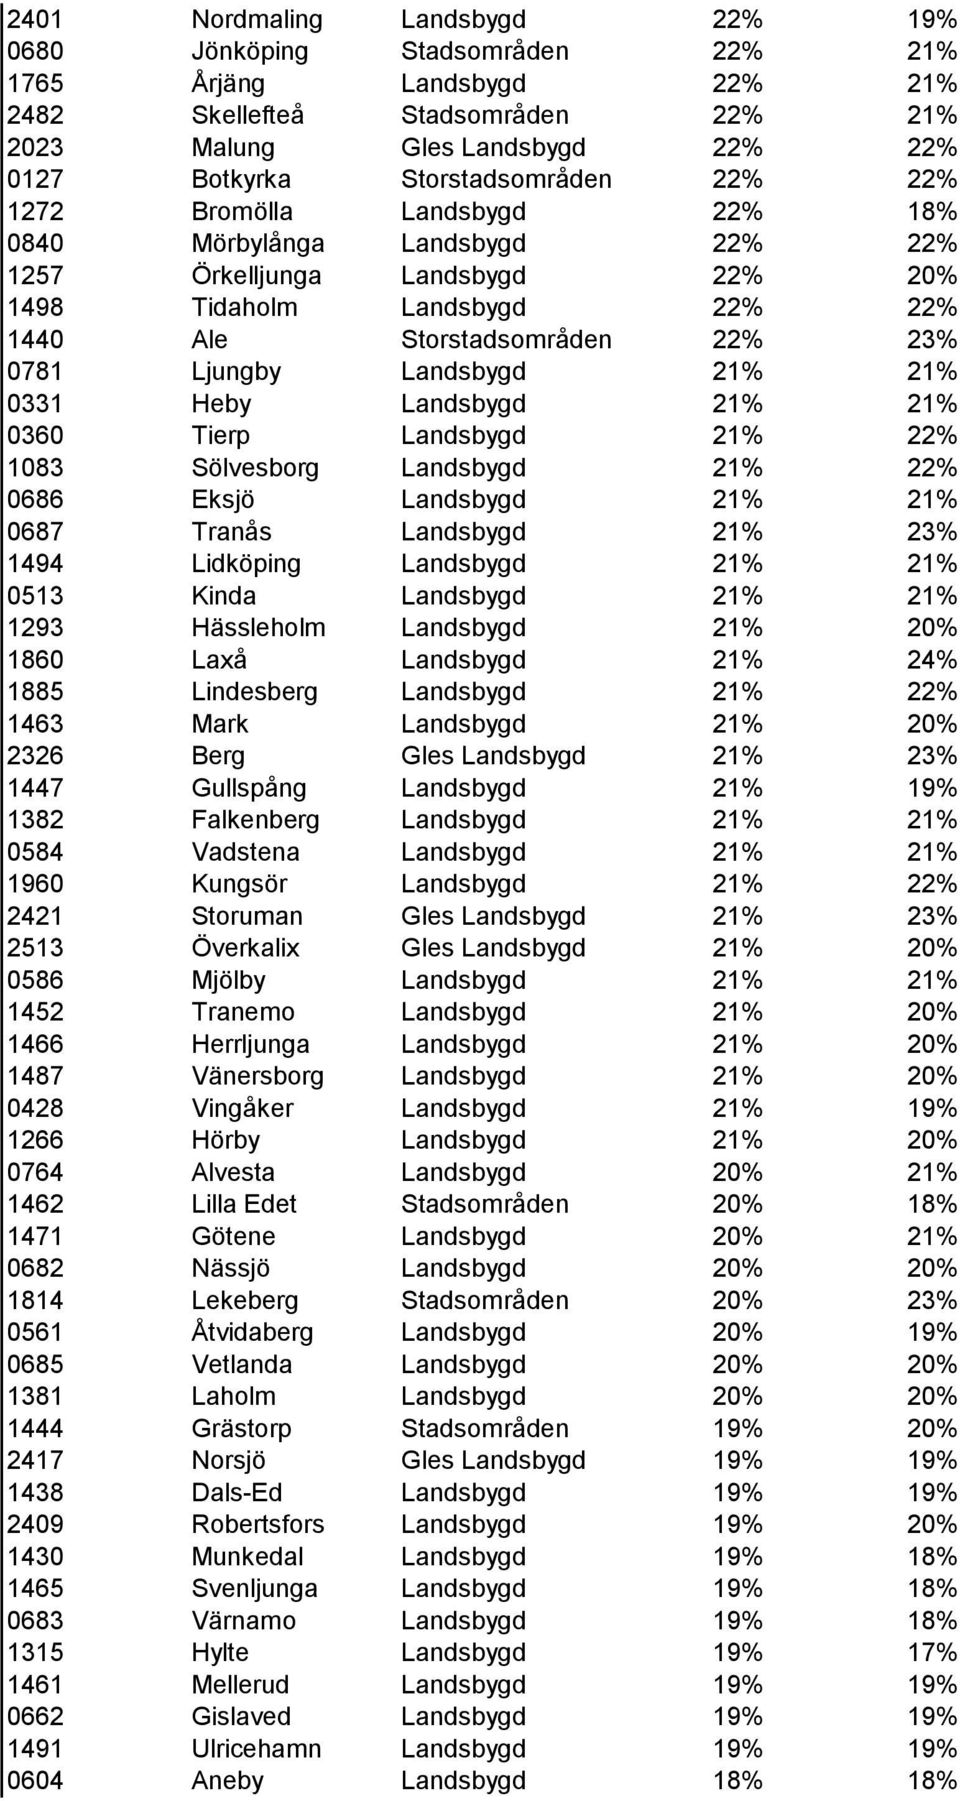 Ljungby Landsbygd 21% 21% 0331 Heby Landsbygd 21% 21% 0360 Tierp Landsbygd 21% 22% 1083 Sölvesborg Landsbygd 21% 22% 0686 Eksjö Landsbygd 21% 21% 0687 Tranås Landsbygd 21% 23% 1494 Lidköping